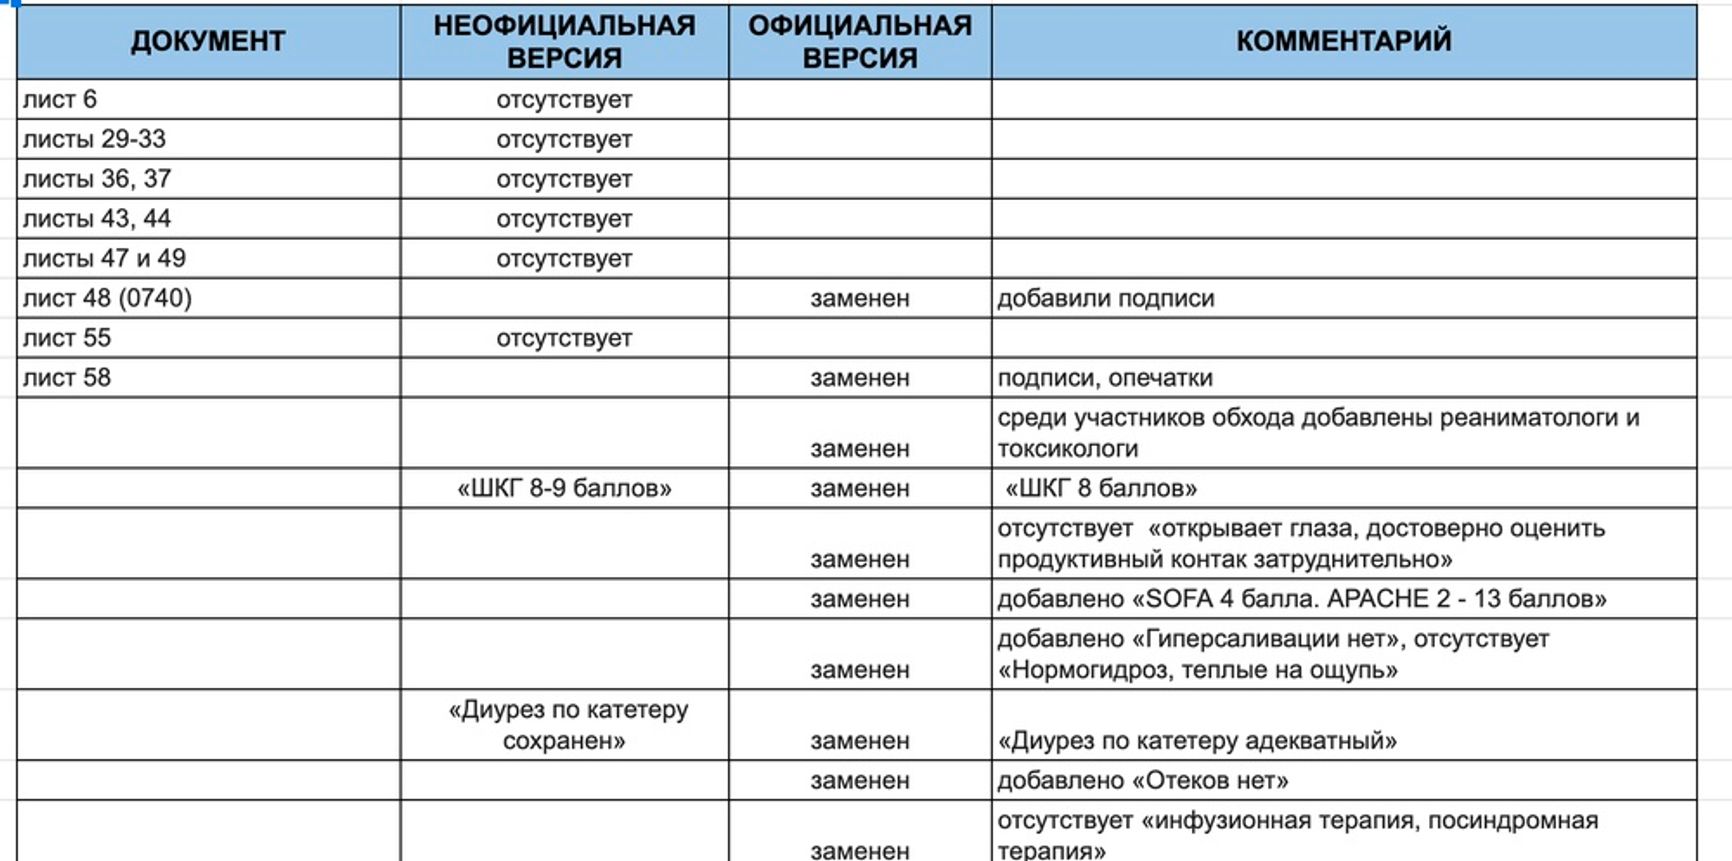 Медичні документи Навального в Омську були сфальсифіковані. З документів вилучили аналіз крові, але адвокати його знайшли